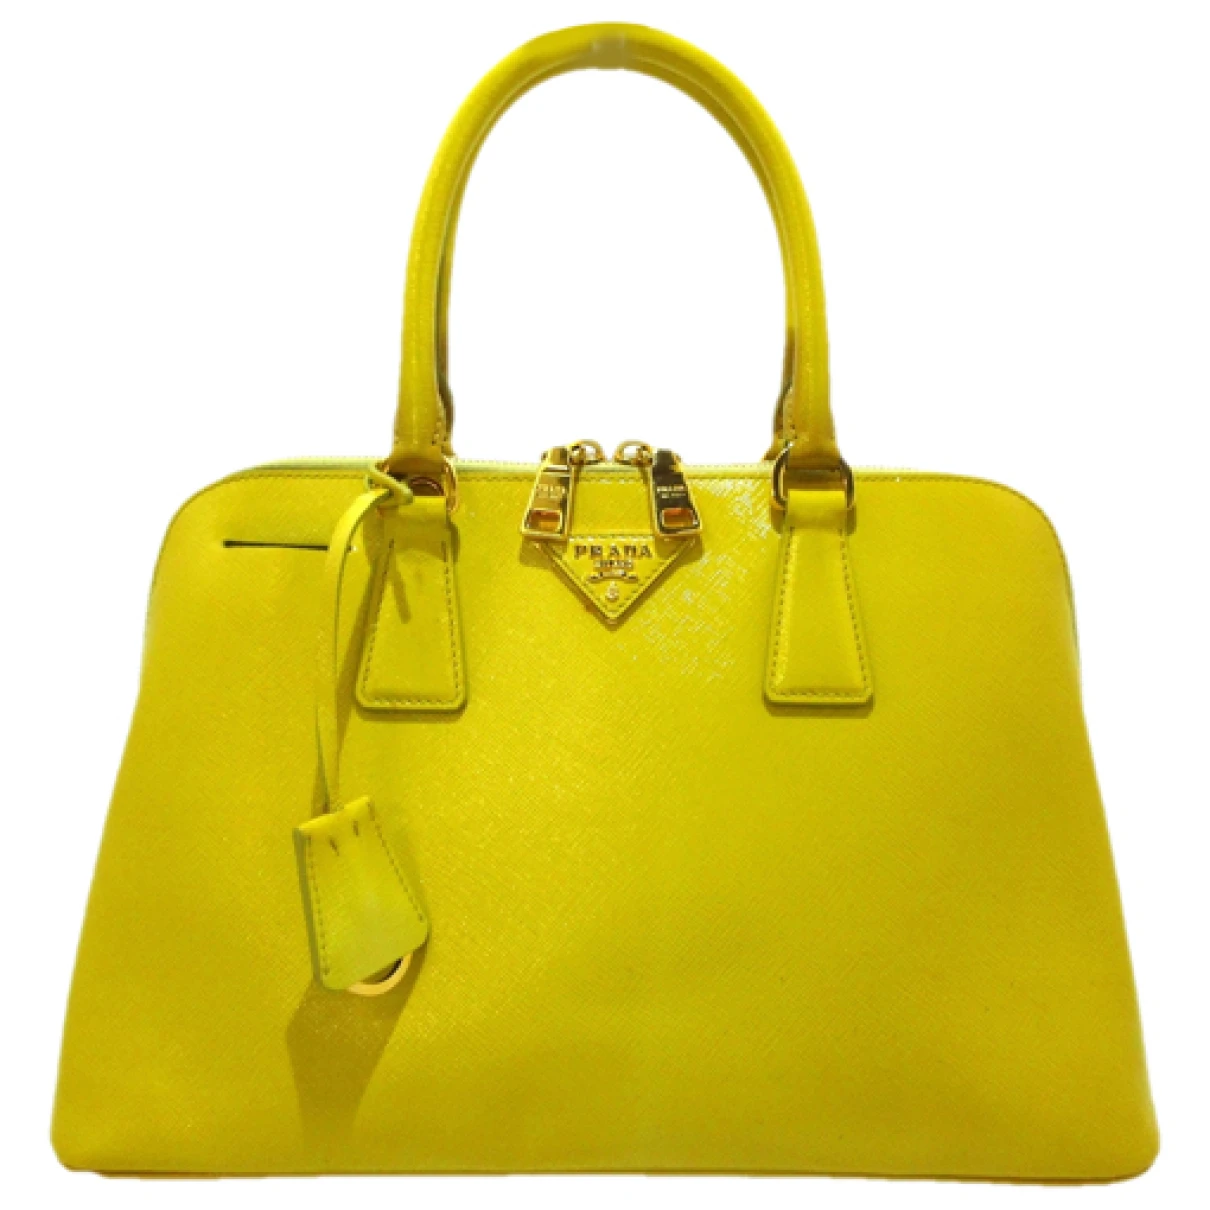 Pre-owned Prada Promenade Patent Leather Handbag In Yellow